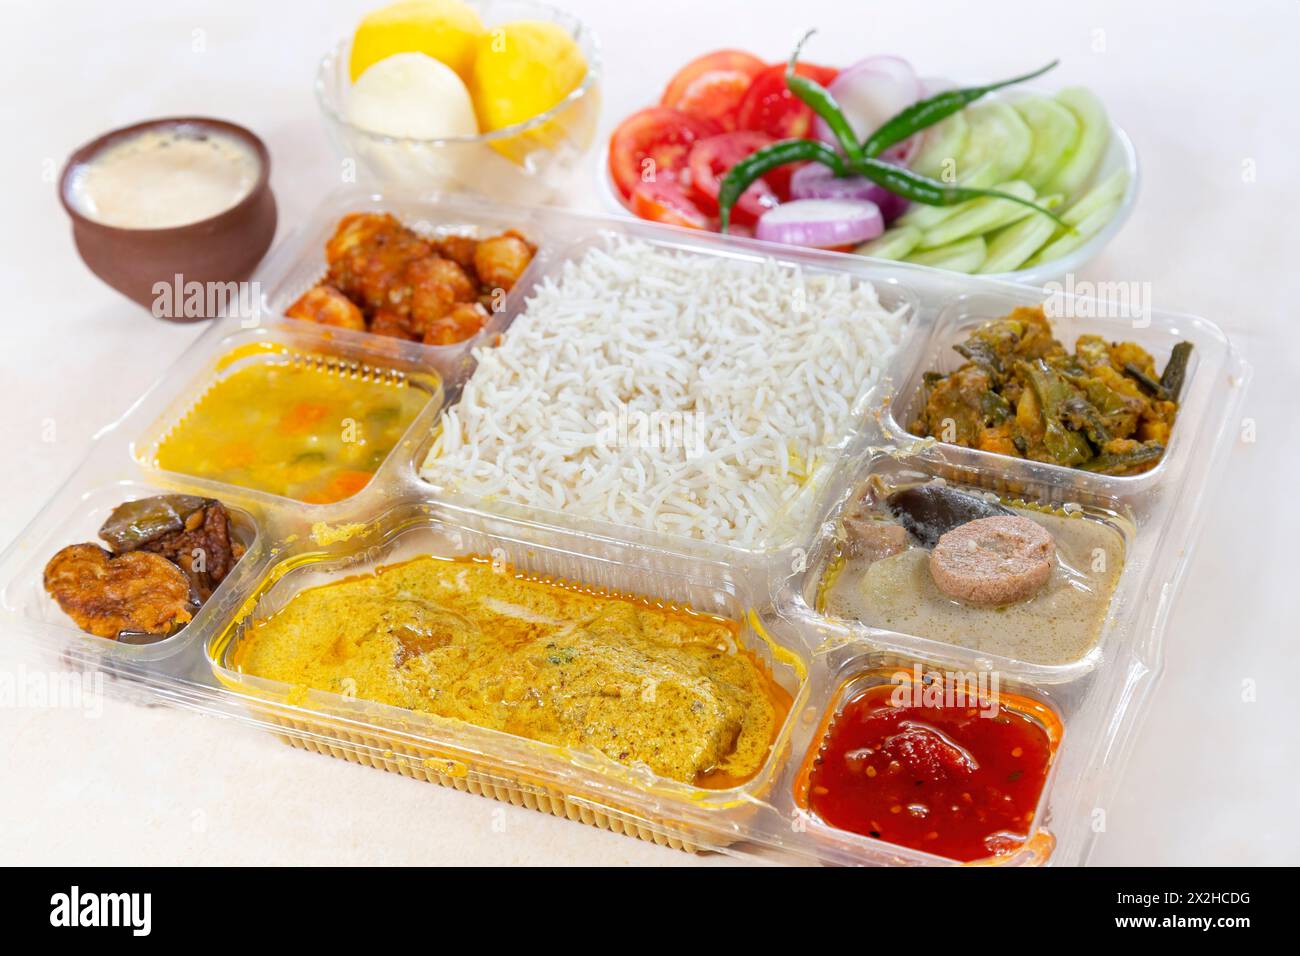 Indisches bengalisches gemischtes Thali-Gericht mit vegetarischen und nicht-vegetarischen Gerichten, bestehend aus reinem Reis, Gemüsegerichten und scharfem Fischcurry. Stockfoto